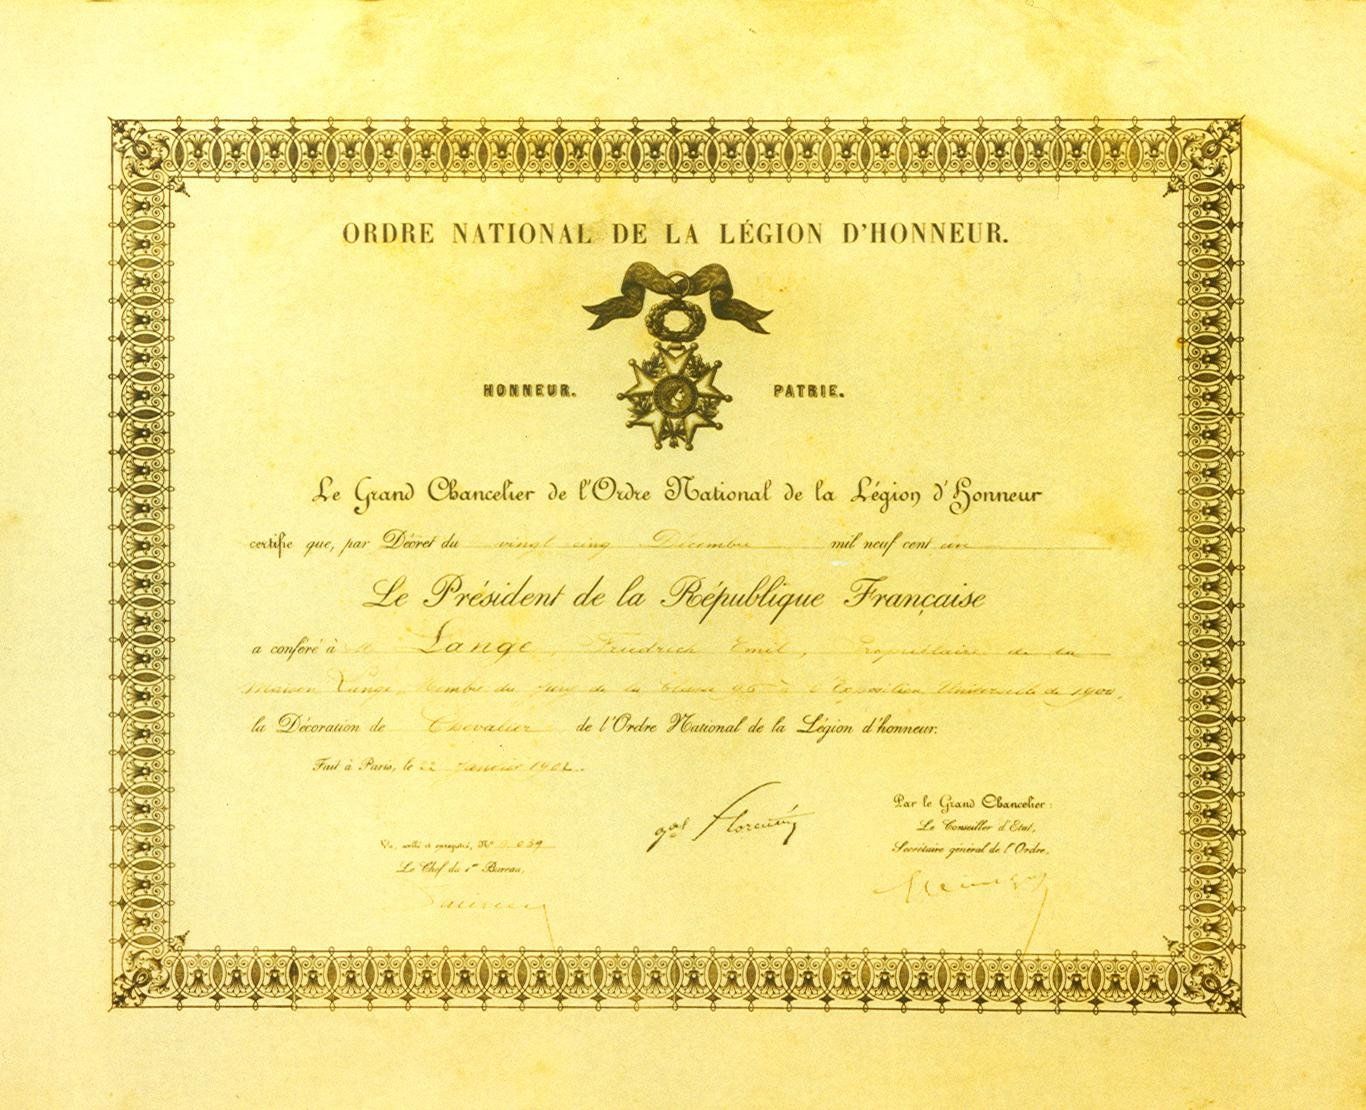 Emil_Lange_certificat_grand_chancelier_de_la_legion_d_honneur